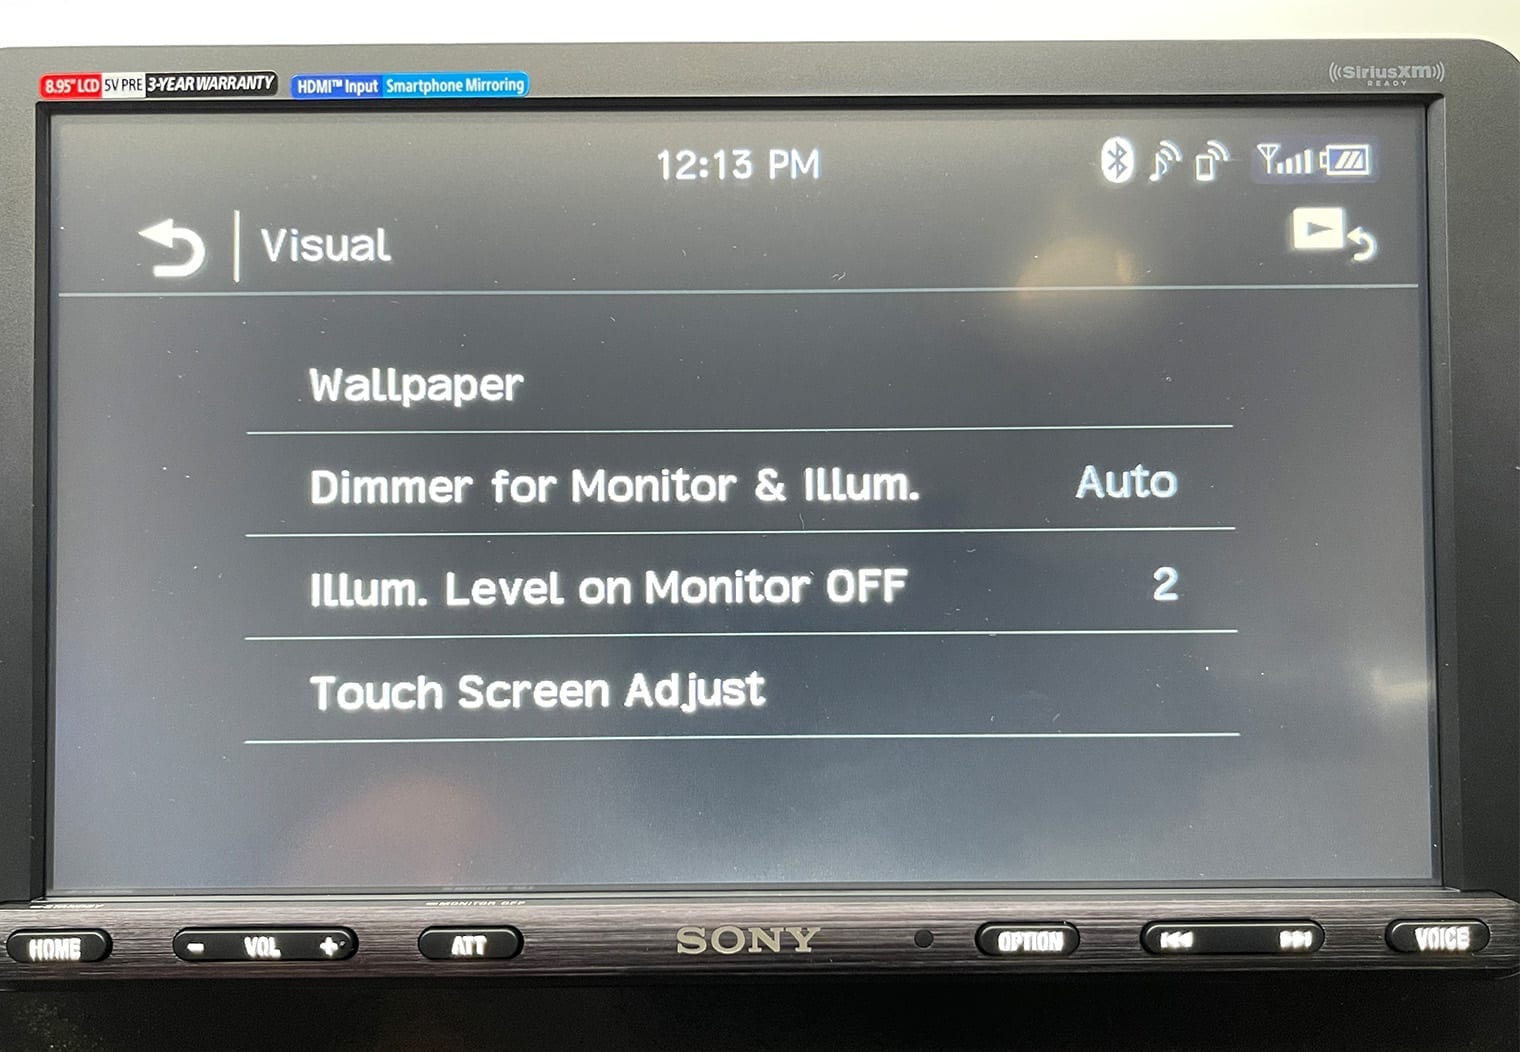 Sony XAV-AX8100 visual settings